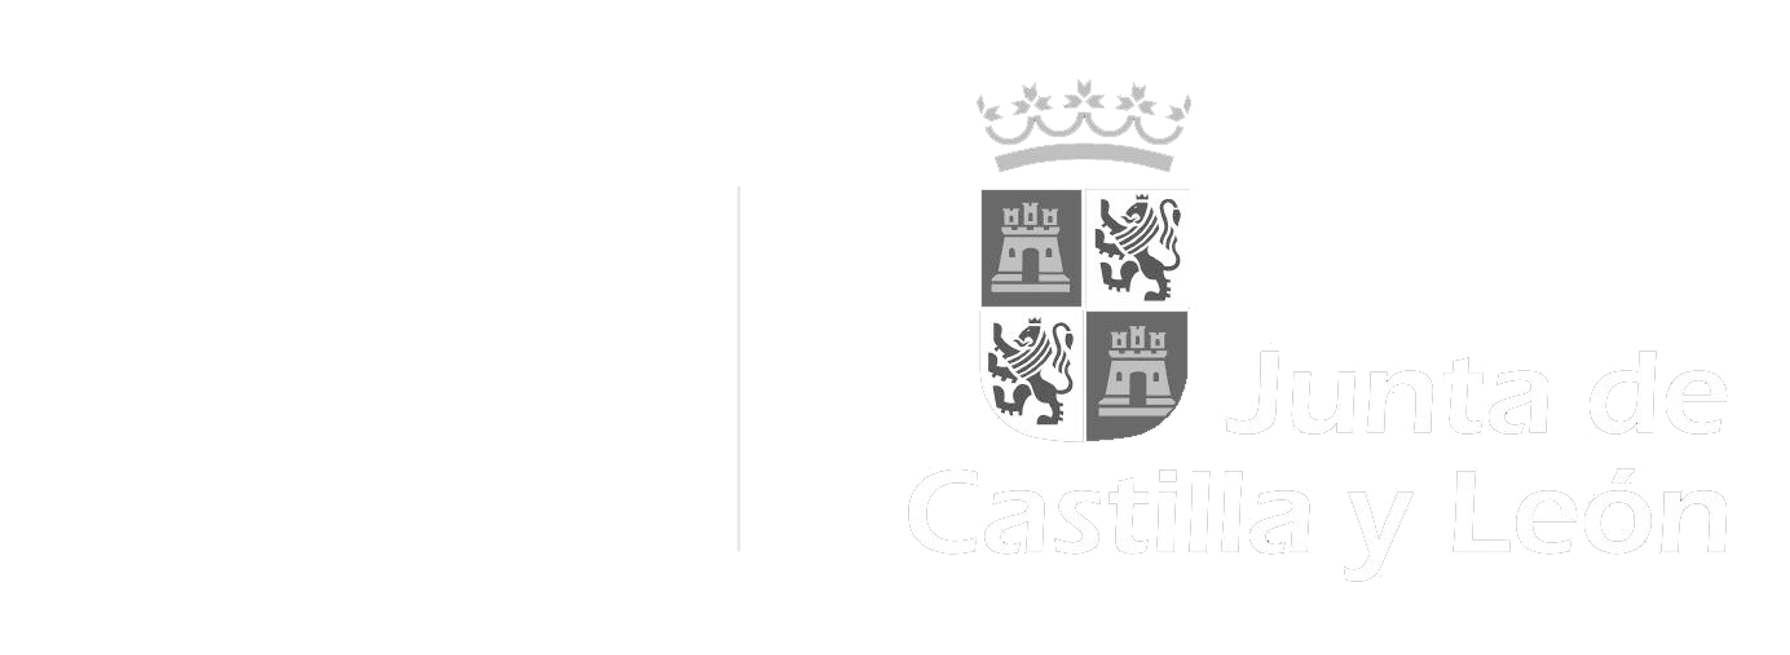 Instituto de la Juventud de Castilla y León